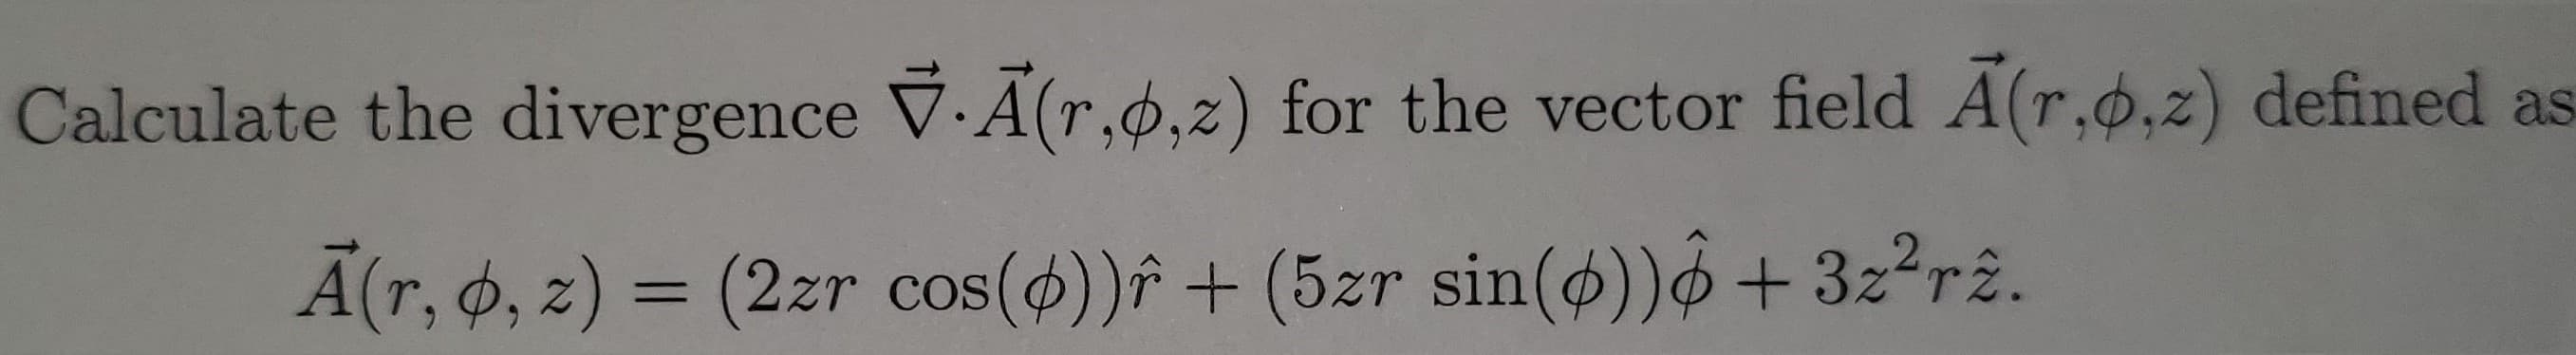 Calculate the divergence V.A (r,ø,z) for the vector field A(r,0,z) defined as
A(r, 6, z) = (2zr cos())î + (5zr sin(ø))+3z2rê.
